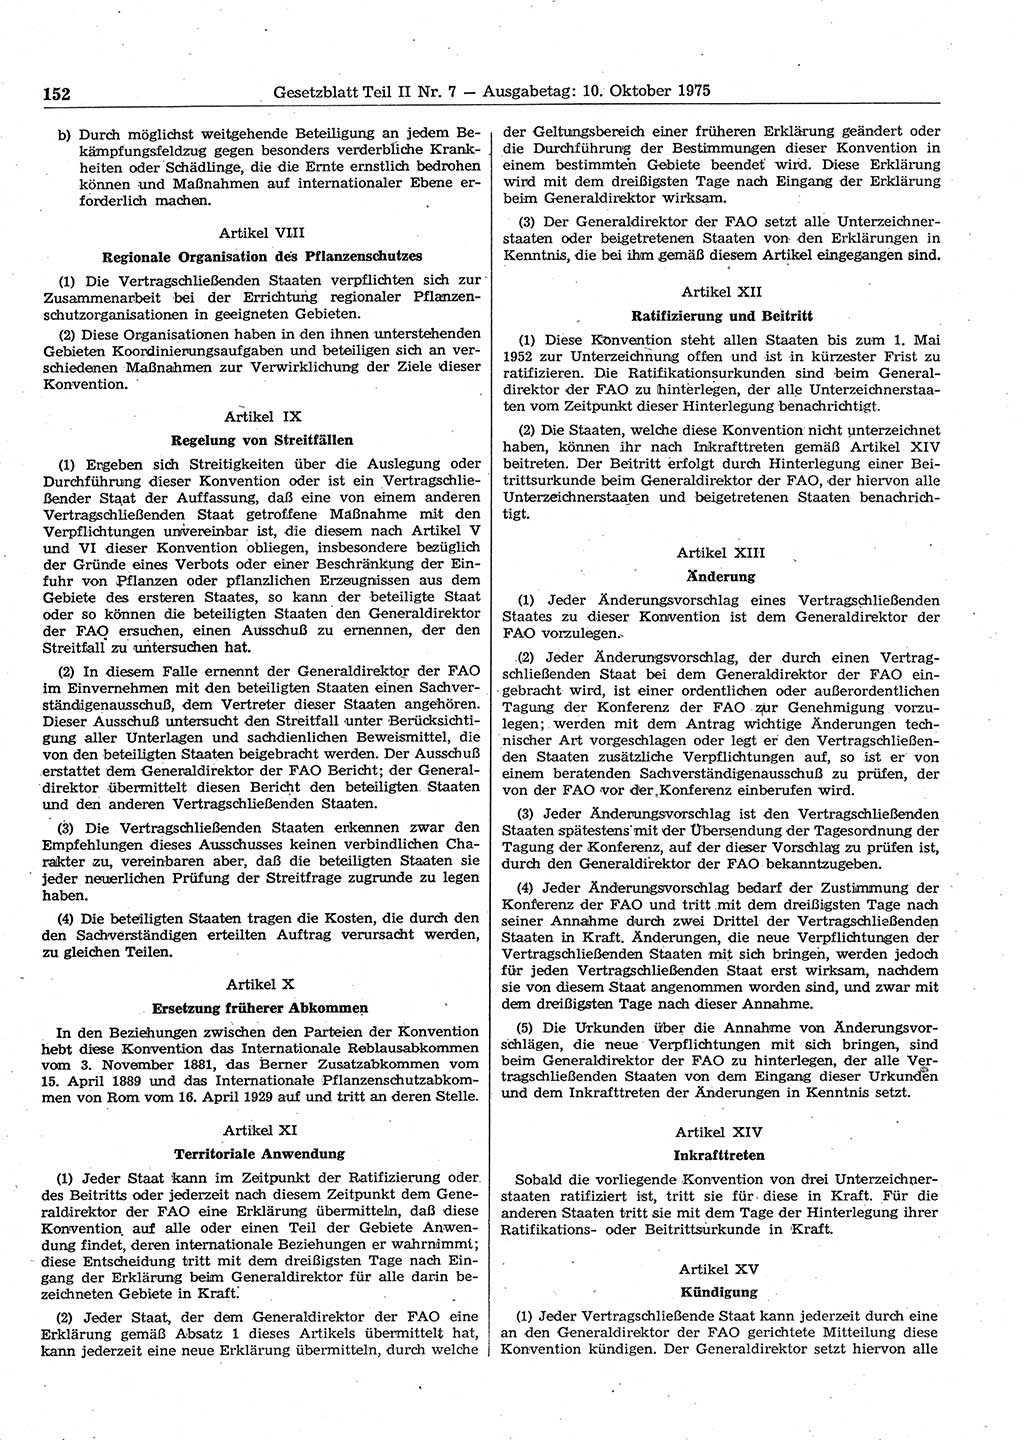 Gesetzblatt (GBl.) der Deutschen Demokratischen Republik (DDR) Teil ⅠⅠ 1975, Seite 152 (GBl. DDR ⅠⅠ 1975, S. 152)